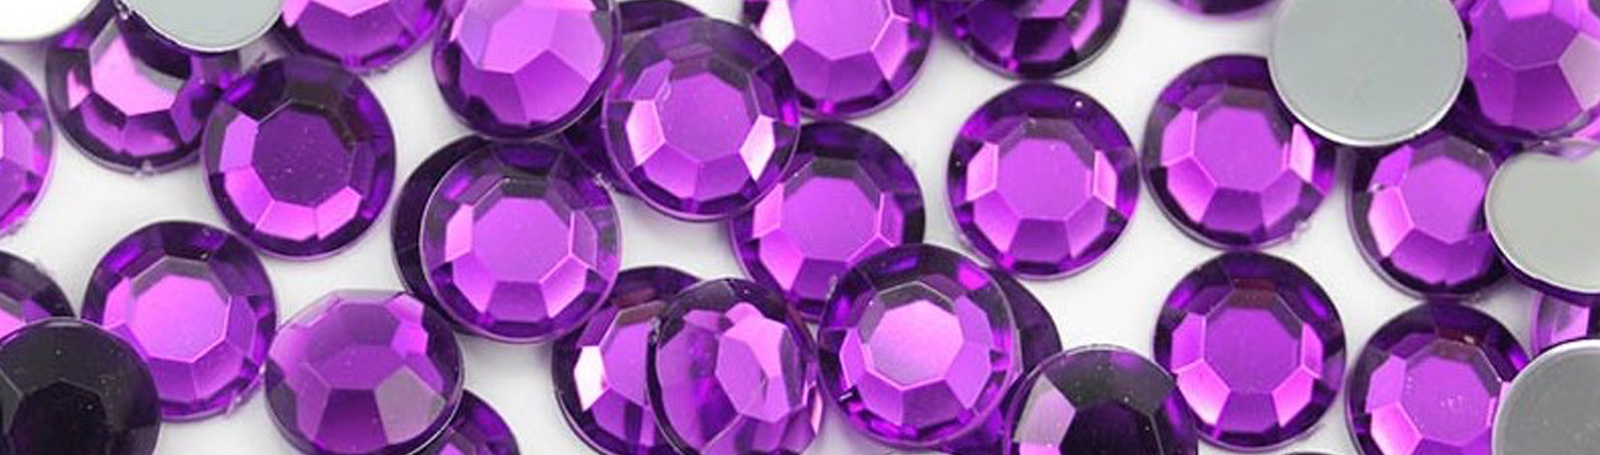 purple-rhinestones.jpg